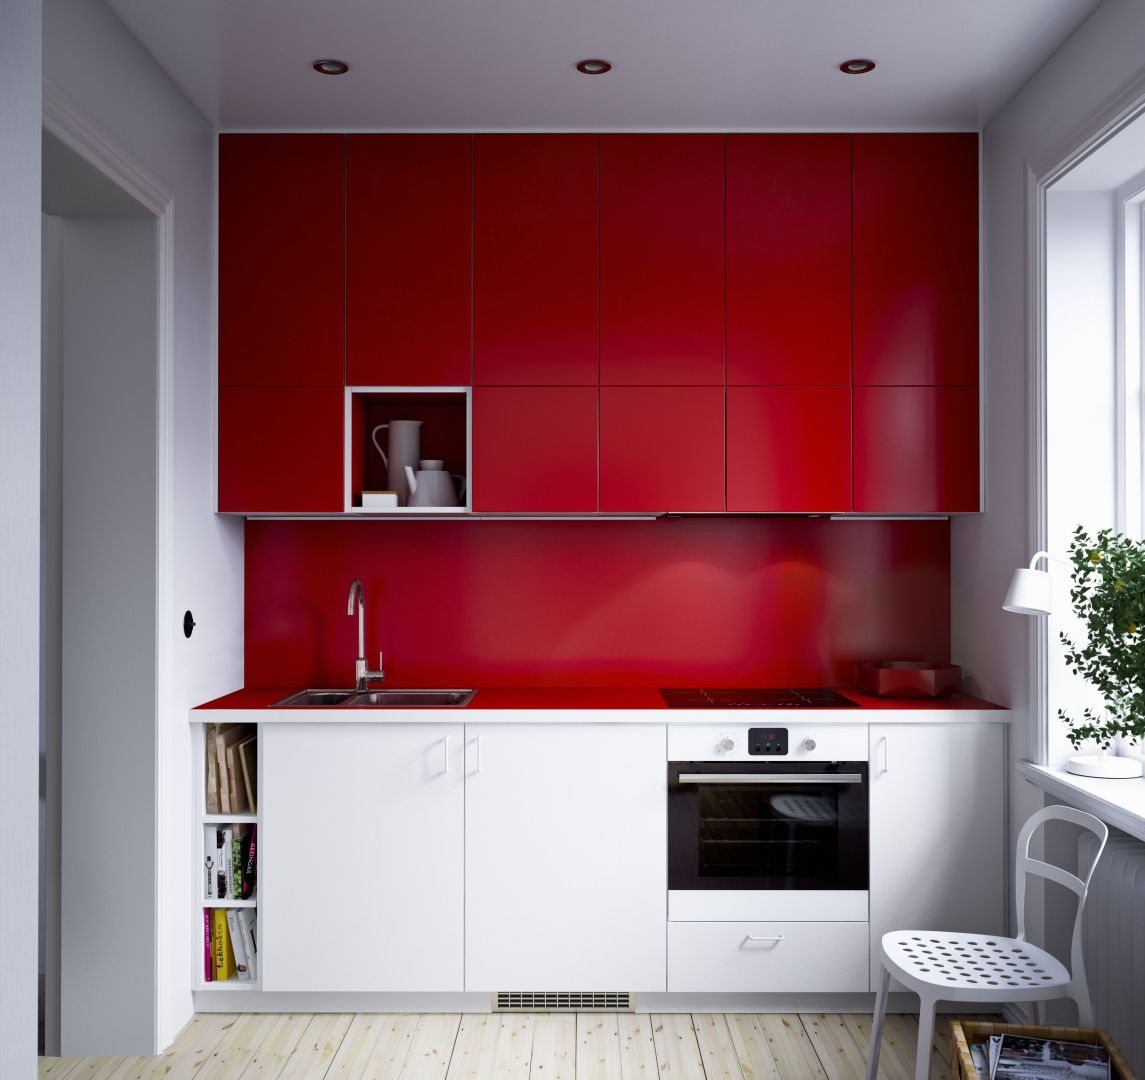 Dość nietypowe rozmieszczenie kolorów - czerwień na górze, biel na dole. Fot. IKEA